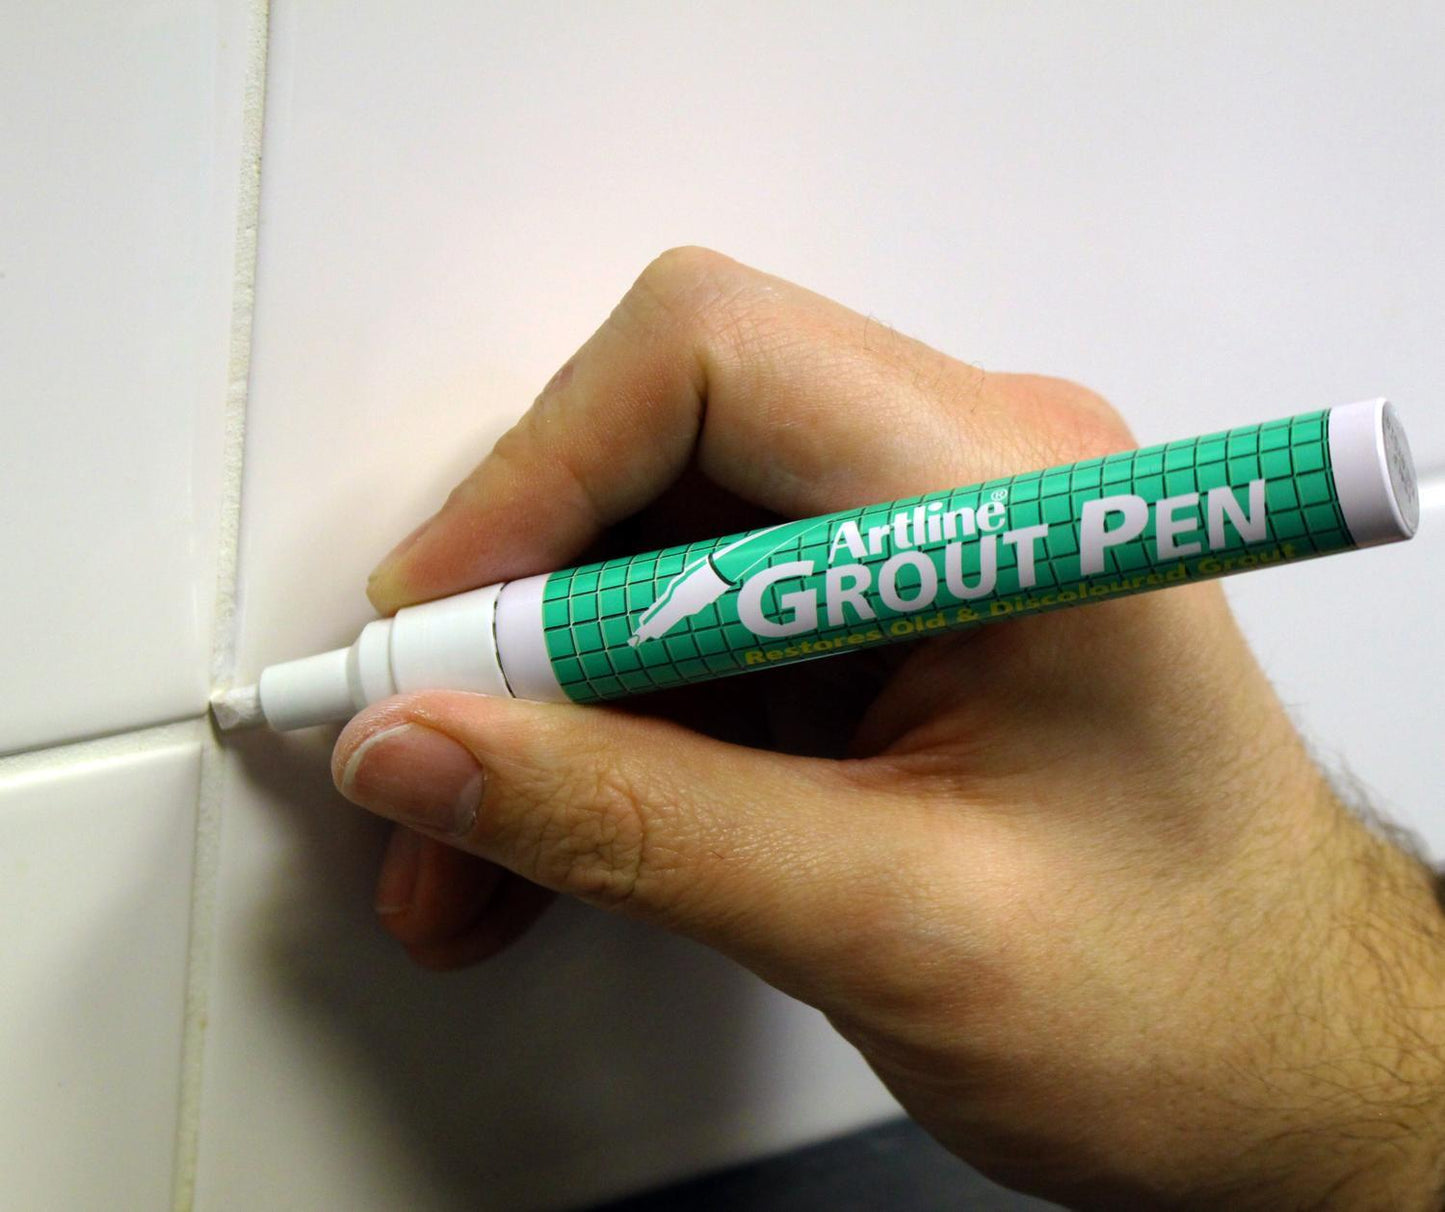 Märkpenna/Kakelpenna Artline EK-419 Grout Pen (för gammal & missfärgad puts), Vit